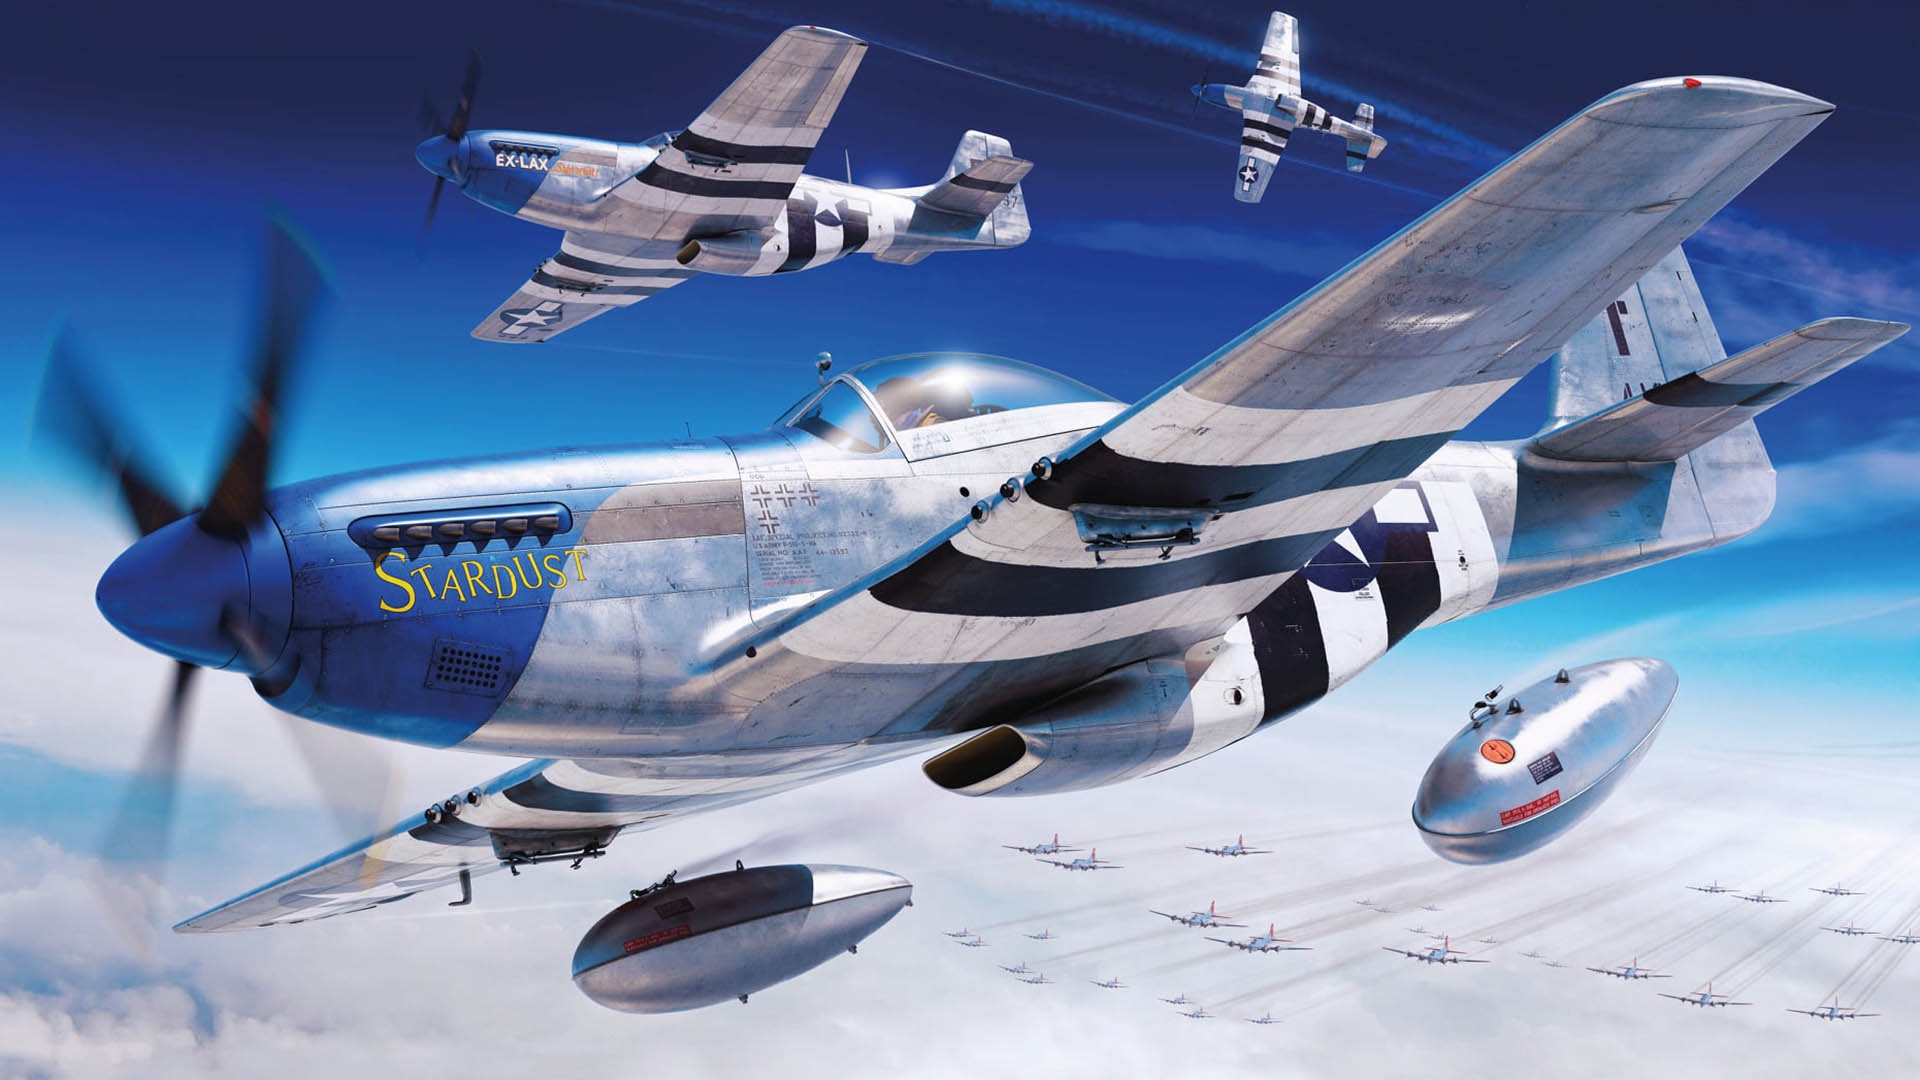 Скачать обои бесплатно Самолёты, Военные, Боевой Самолет, Североамериканский P 51 Мустанг, Военный Самолет картинка на рабочий стол ПК